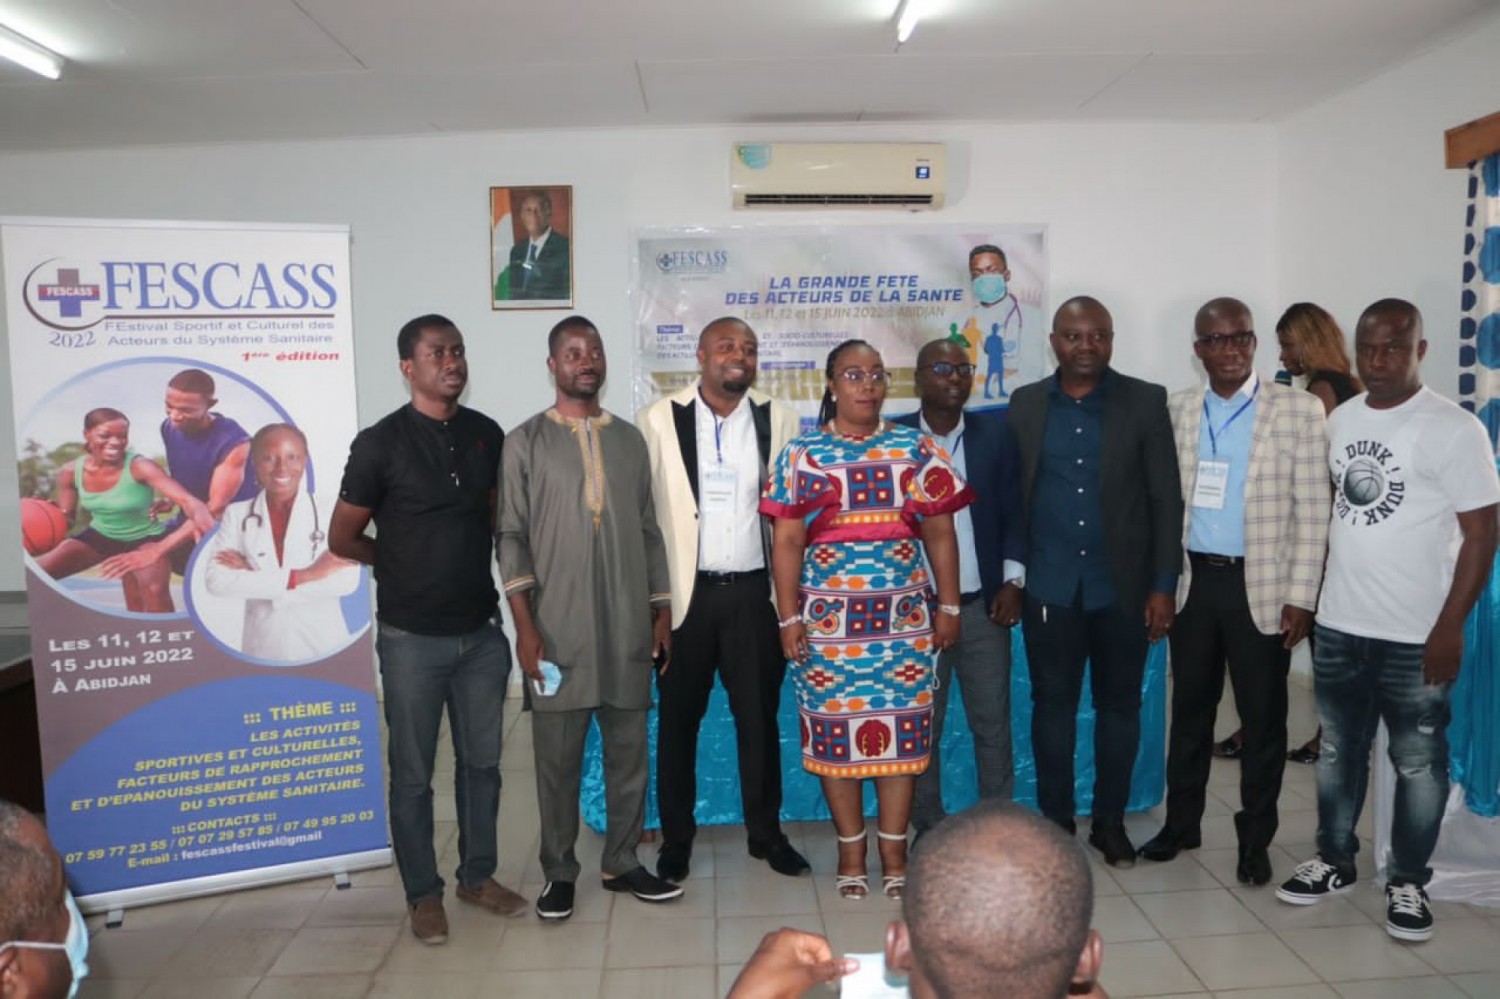 Côte d'Ivoire : Des acteurs du système sanitaire lancent le FESCASS pour valoriser et rapprocher ceux qui œuvrent au bon fonctionnement du secteur de la santé